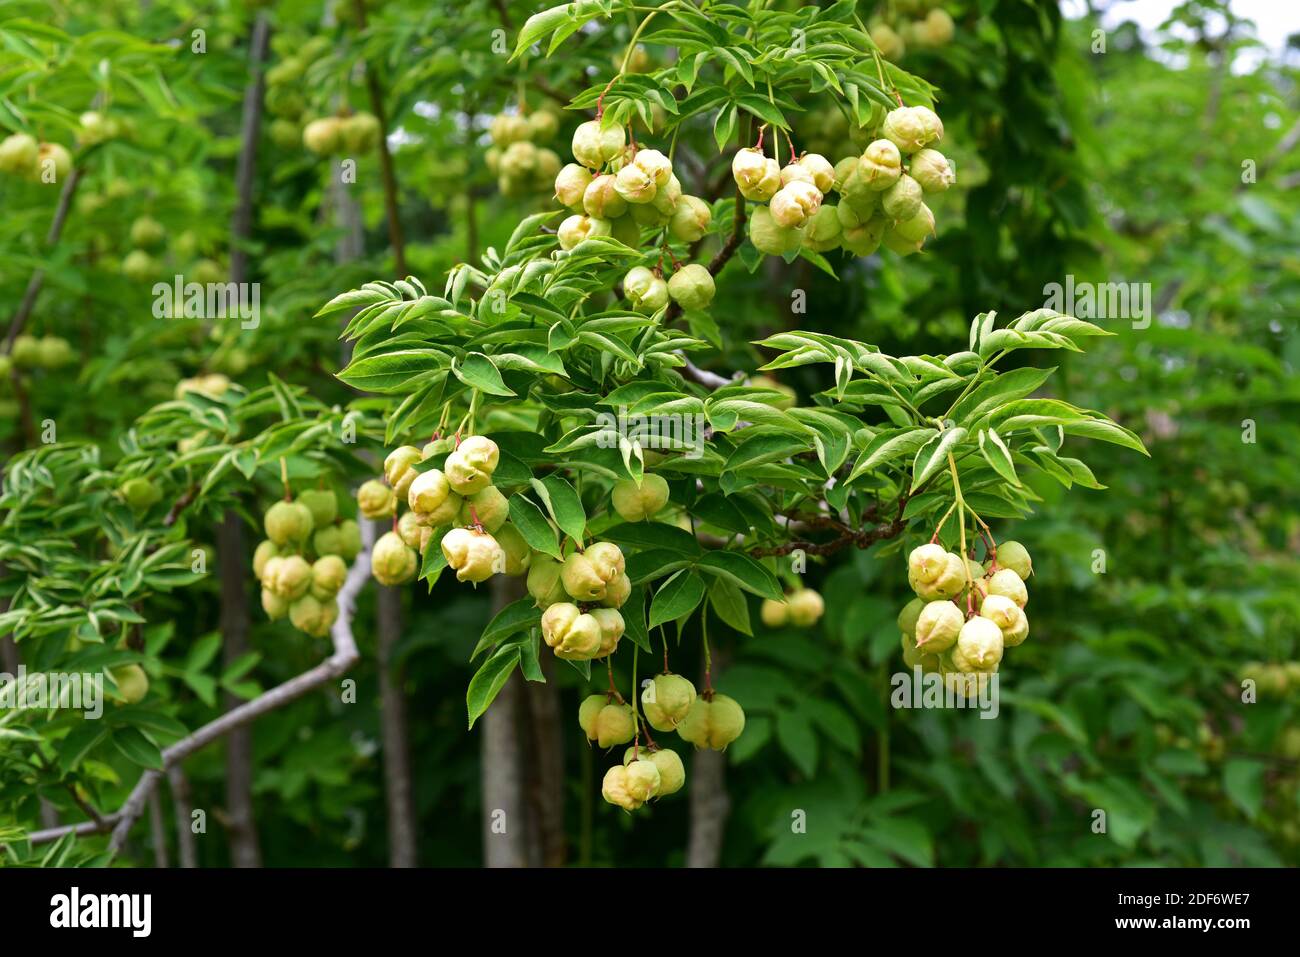 Le bladdernut européen (Staphylea pinnata) est un petit arbre originaire d'Europe centrale. Ses graines sont comestibles. Banque D'Images